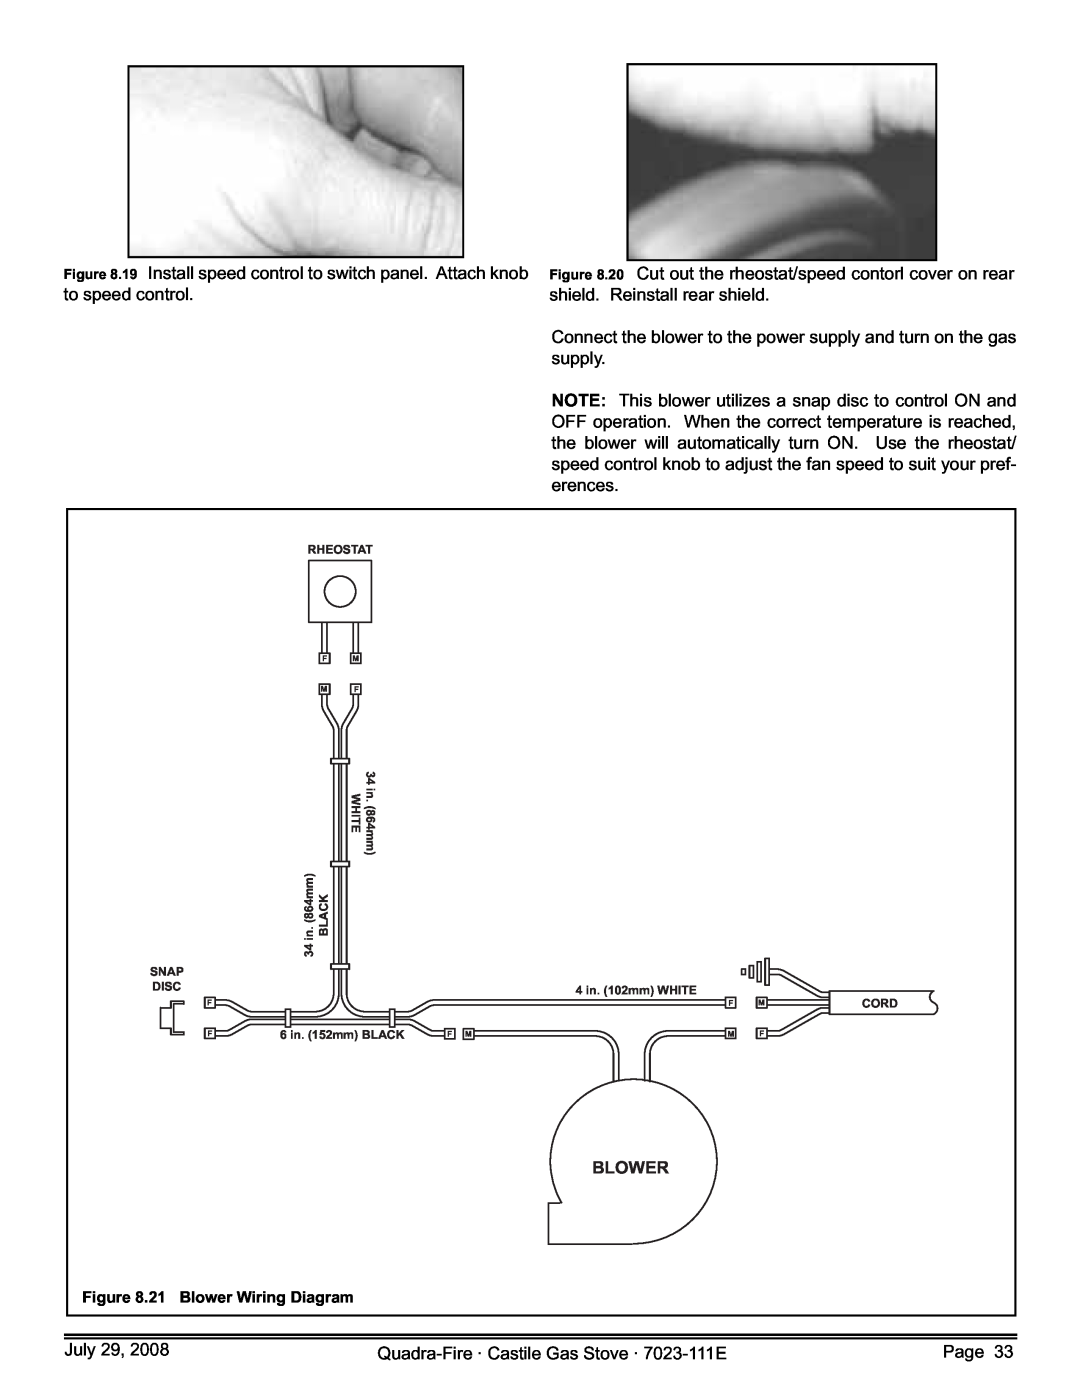 Quadra-Fire CASTILE-GAS-CSB July, Quadra-Fire· Castile Gas Stove · 7023-111E, Page, 21 Blower Wiring Diagram 